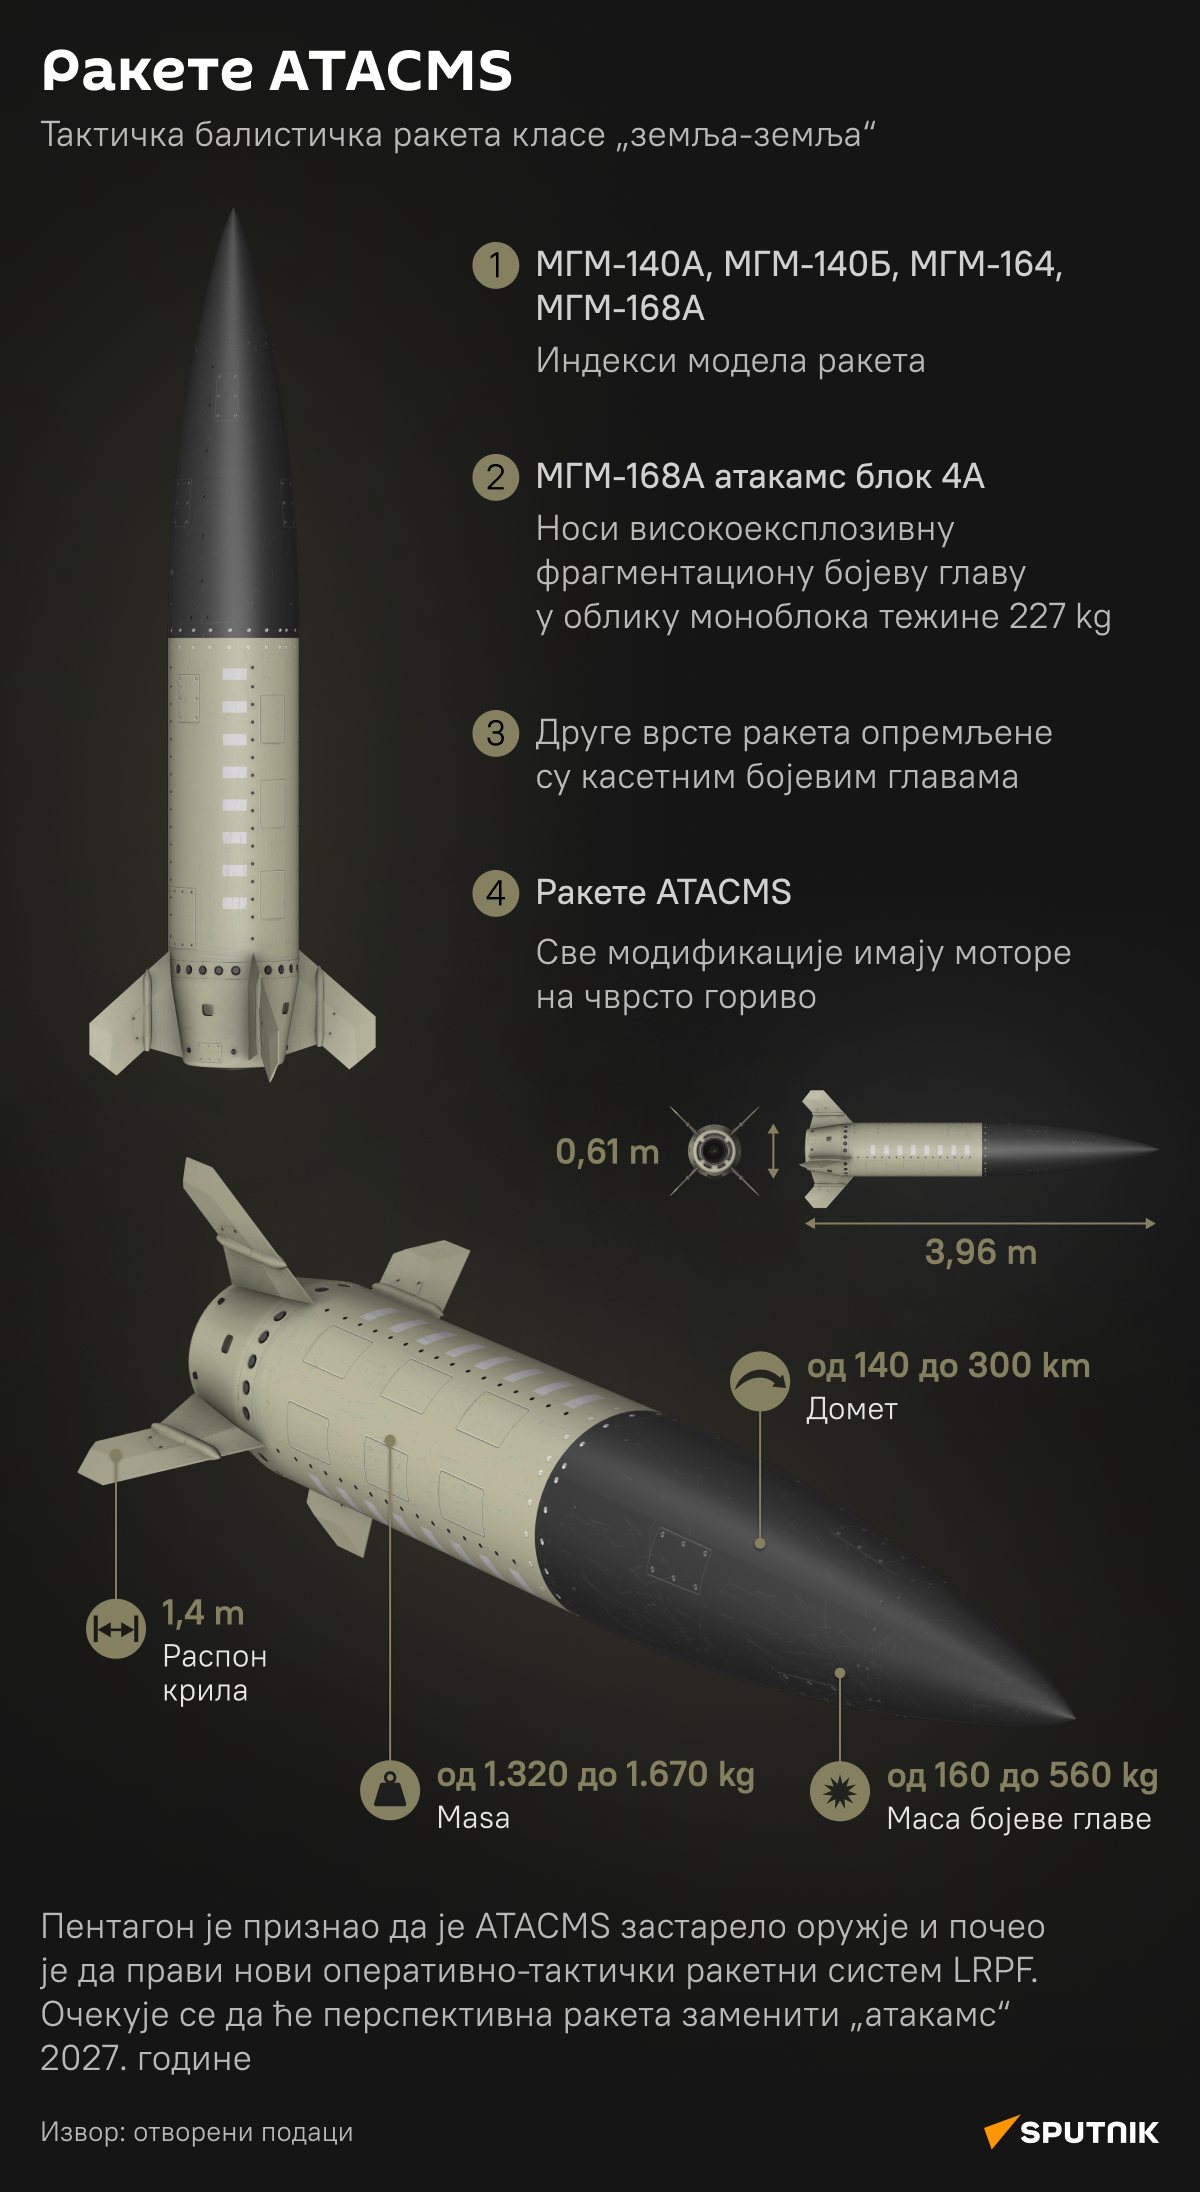 Инфографика Ракете ATACMS ЋИР деск - Sputnik Србија